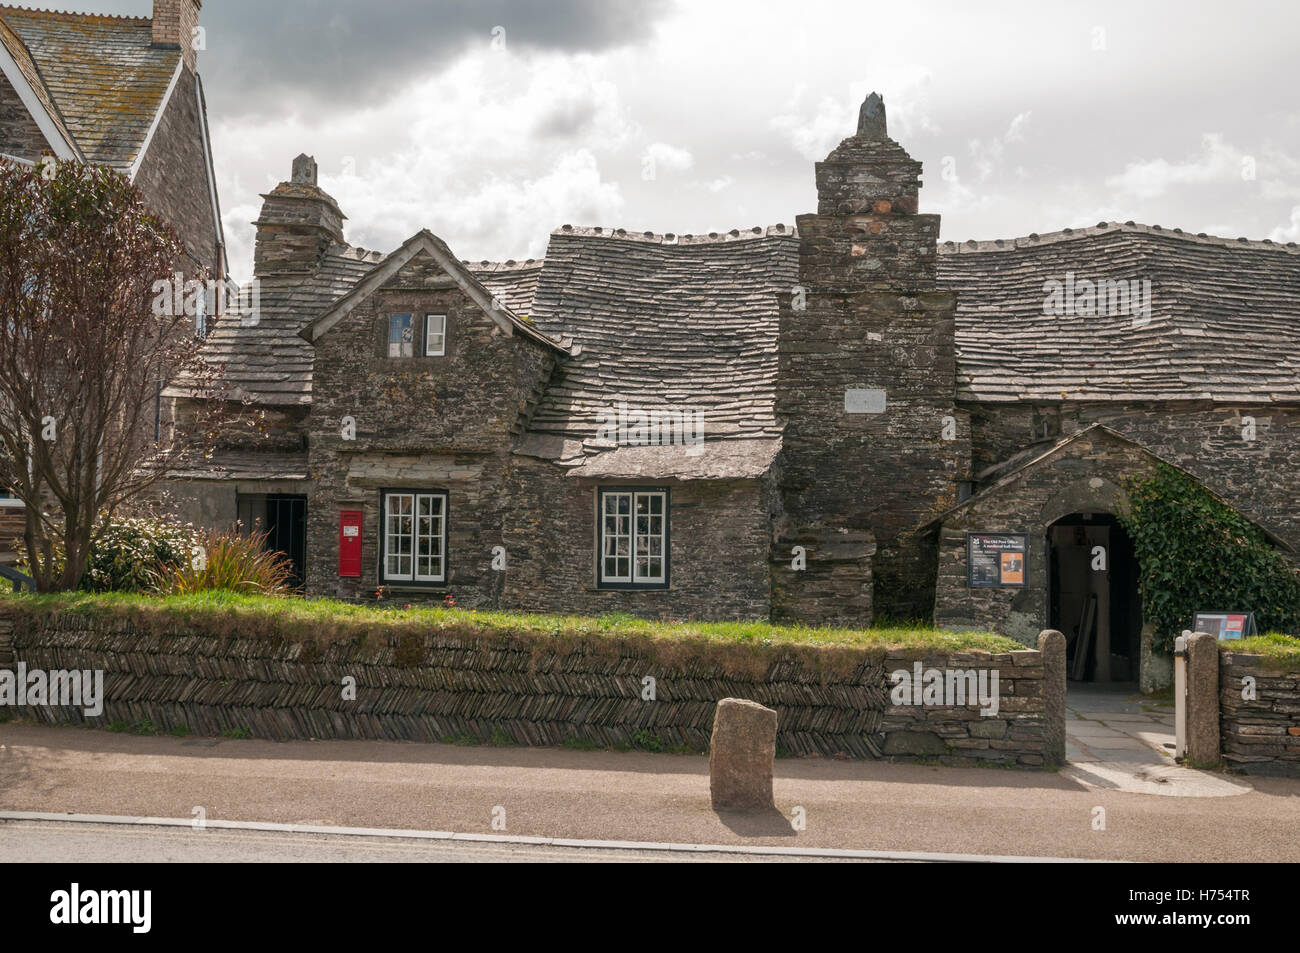 L'ancien bureau de poste, Tintagel, en Cornouailles. Savoirs traditionnels, pierre et ardoise maison médiévale longue. Propriété du National Trust. Banque D'Images